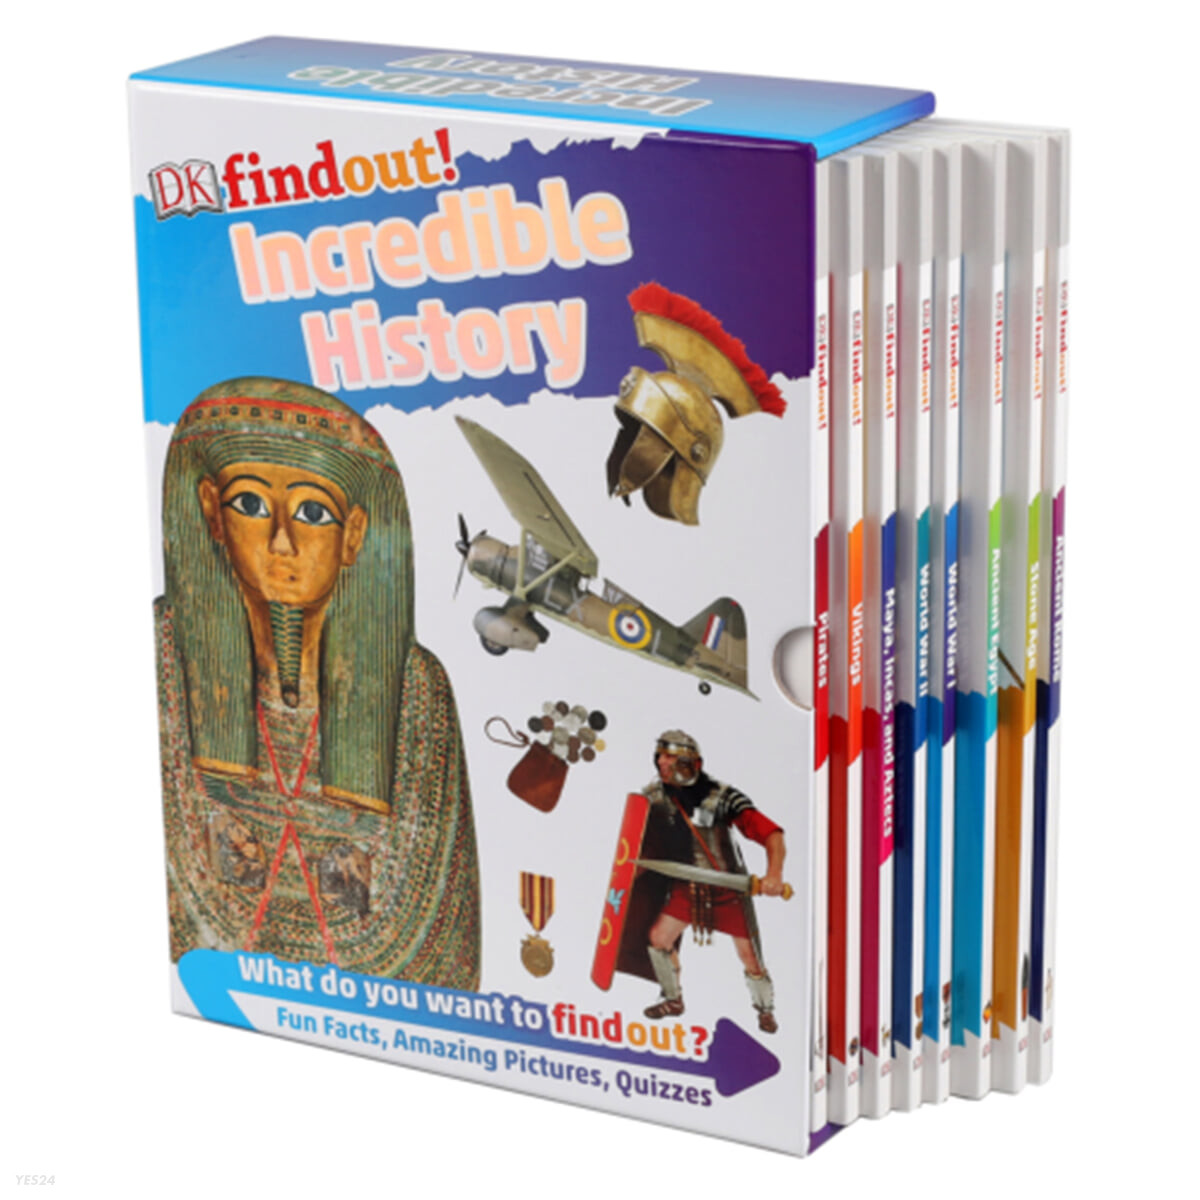 DK 인크레더블 히스토리 8권 세트 : DK findout! Incredible History 8 Books Box Set (로마시대/석기시대/이집트문명/세계1차&2차대전/마야문명/바이킹/해적)